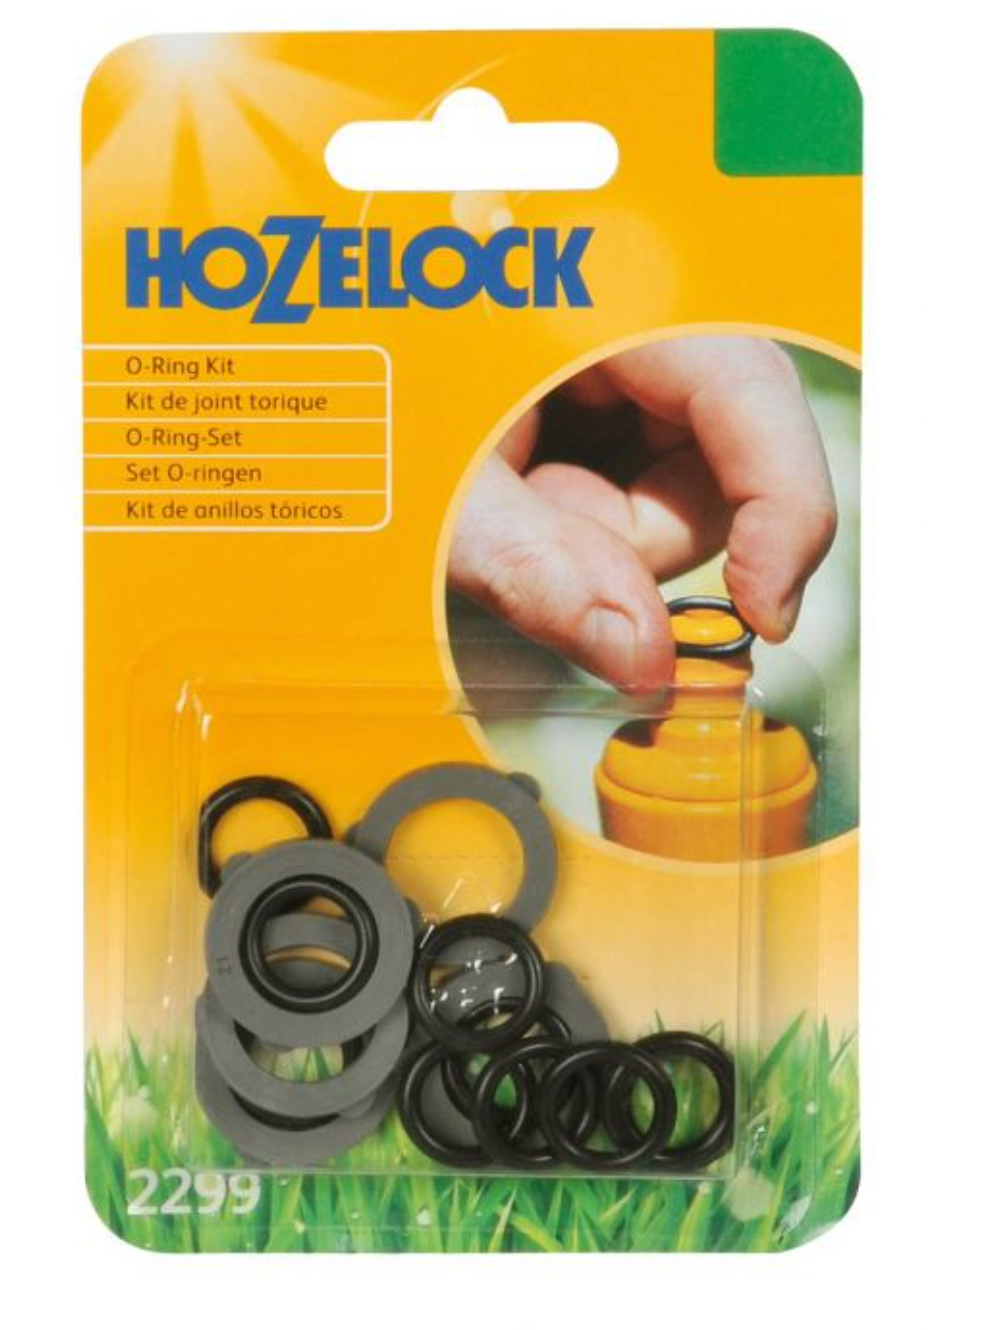 Hozelock 2299 O-Ring Kit